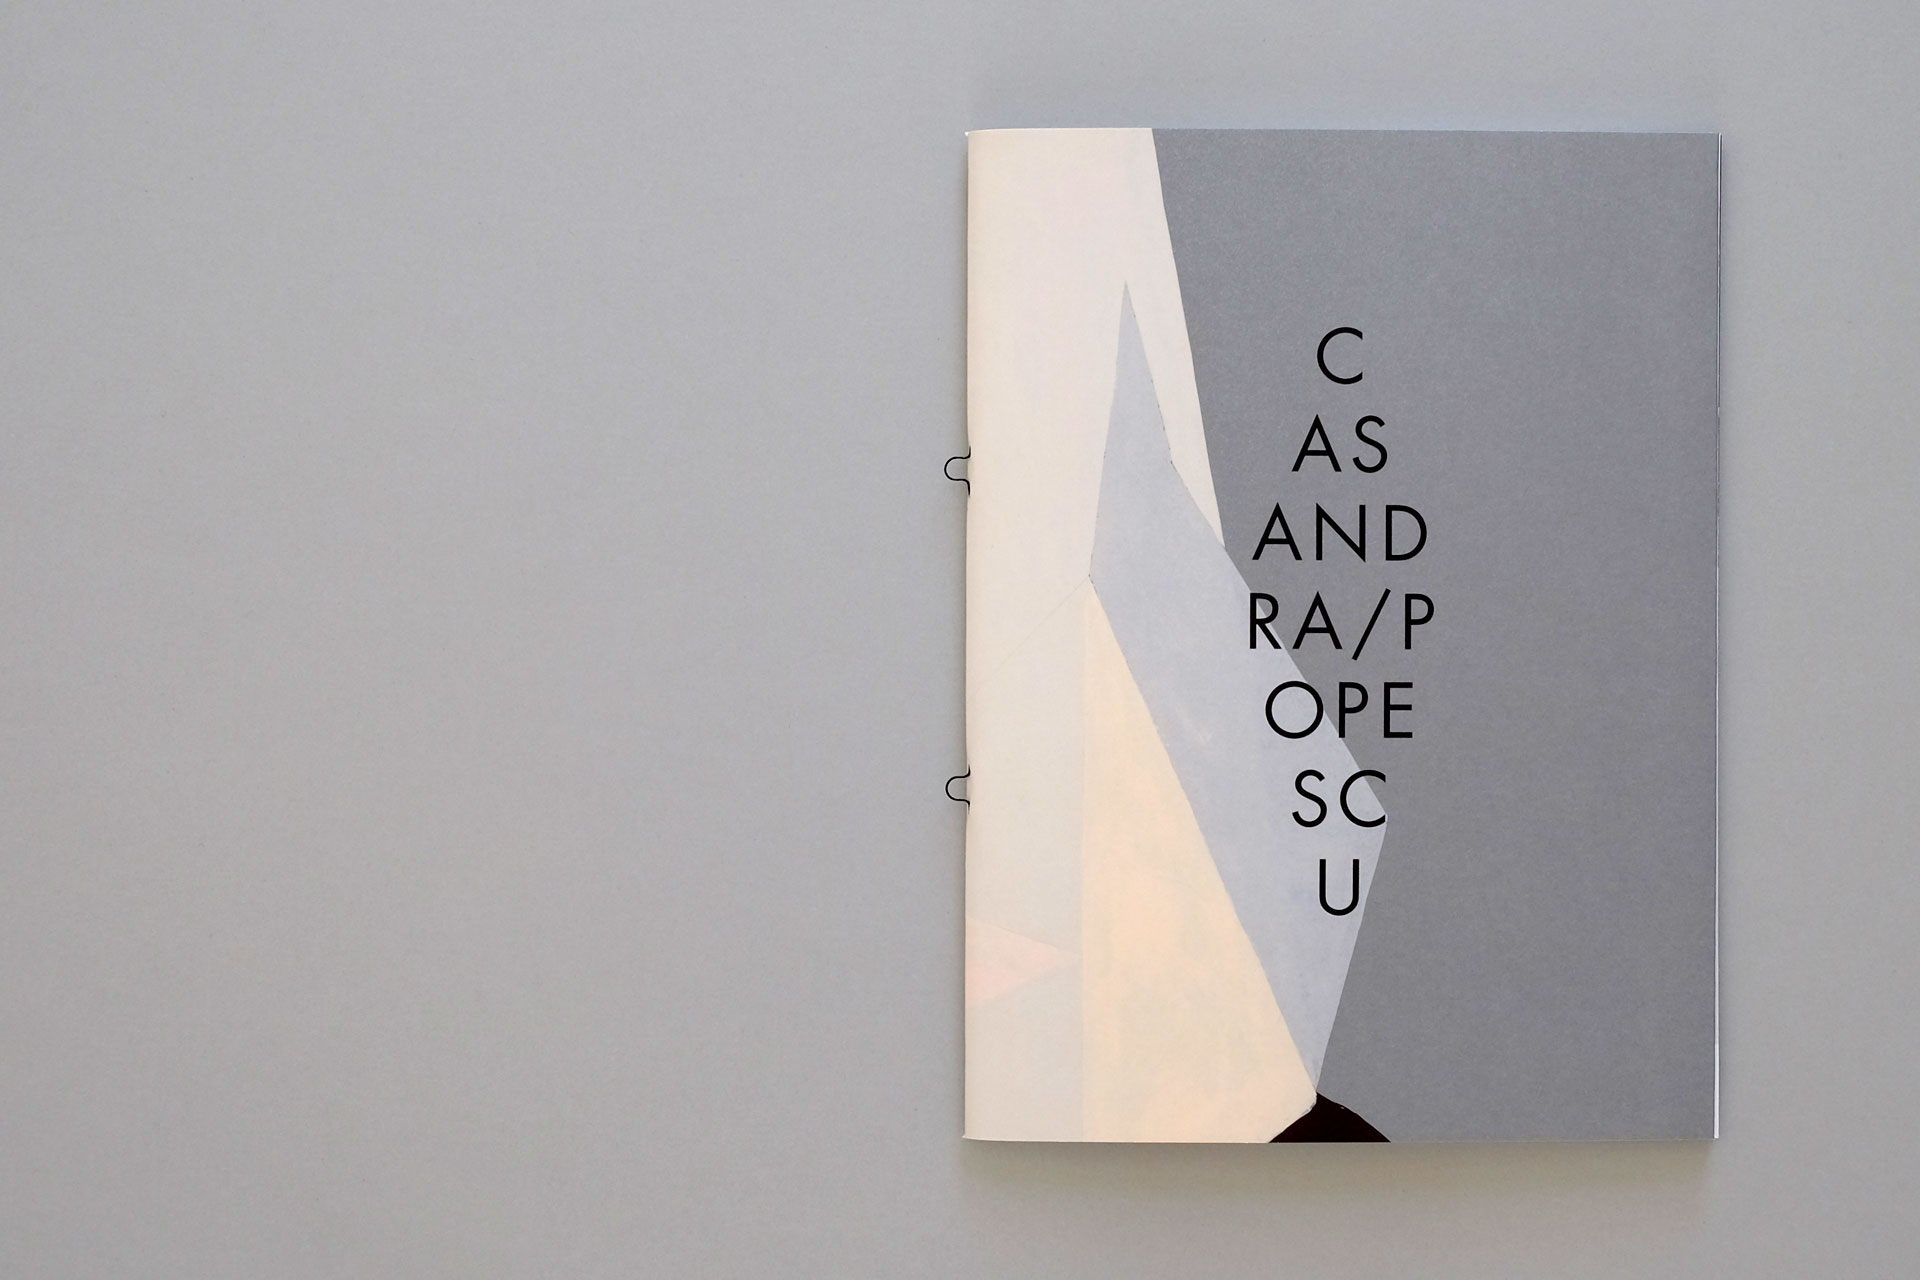 Foto des Covers eines Künstlerbuches für Casandra Popescu mit rautenförmig angeordneter Typografie.